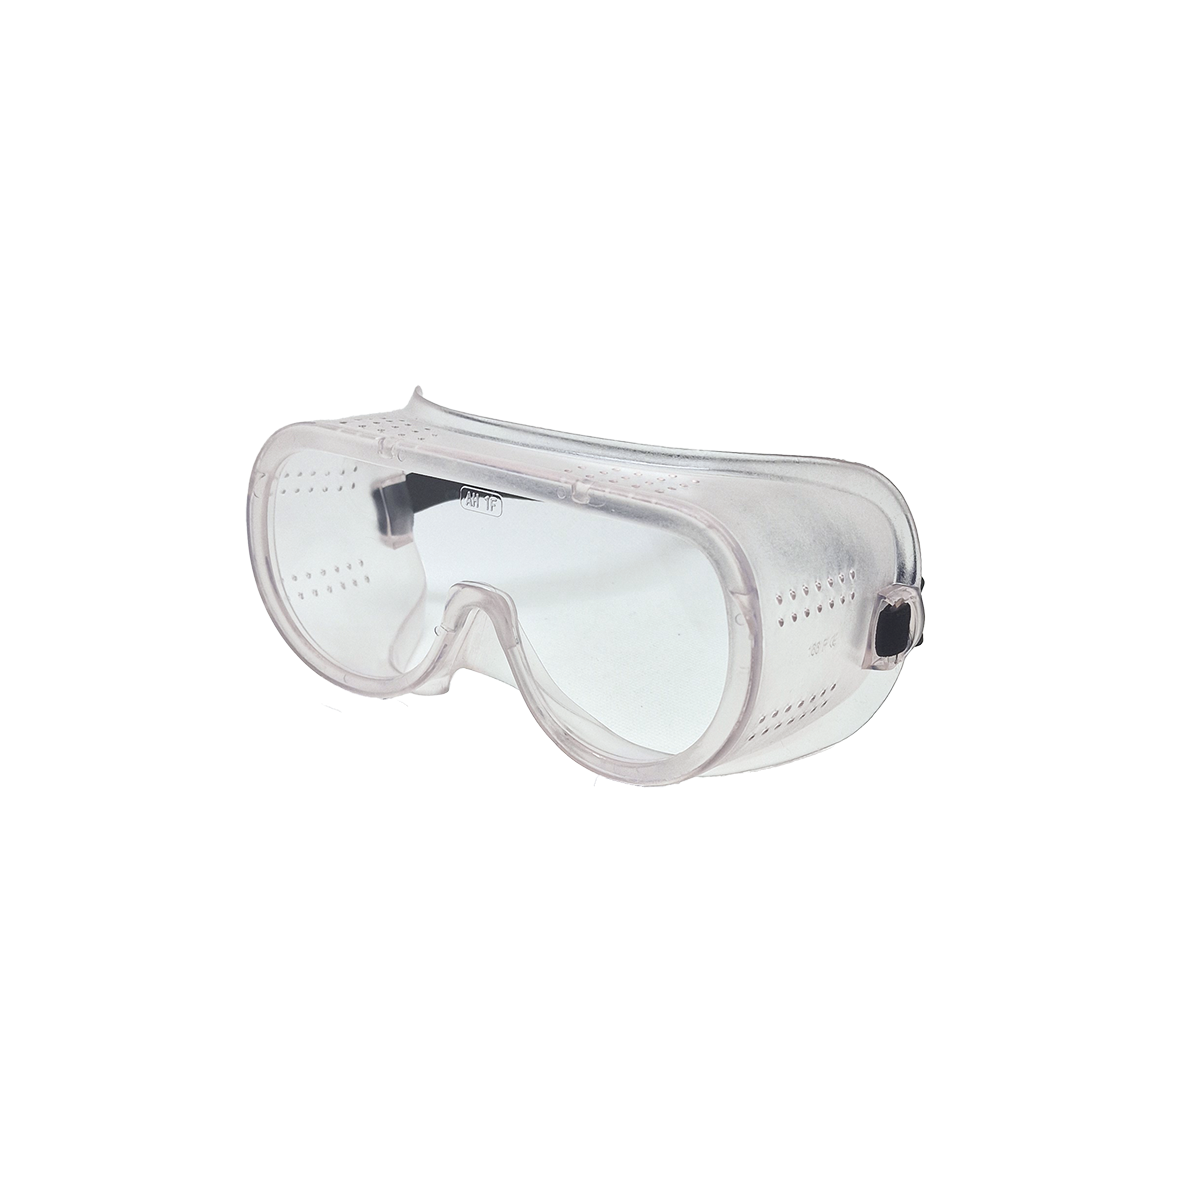 Airmaster – Schutzbrille, belüftet, mit seitlichem Spritzschutz